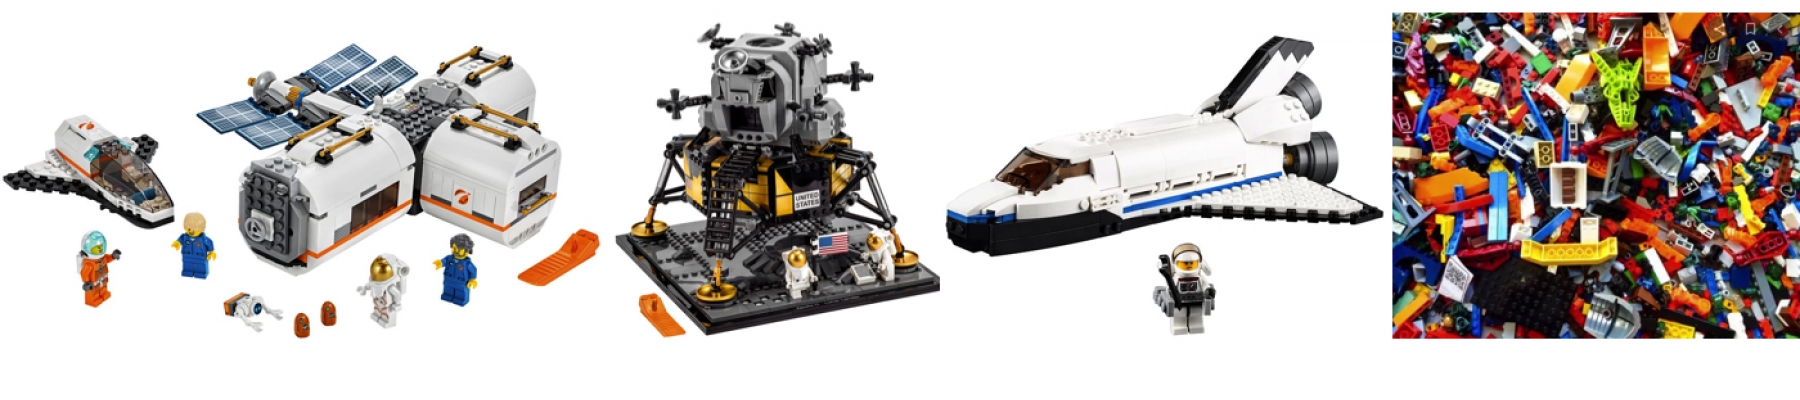 BOUWEN MET LEGO RUIMTEVAART / SPACE   (15 januari)